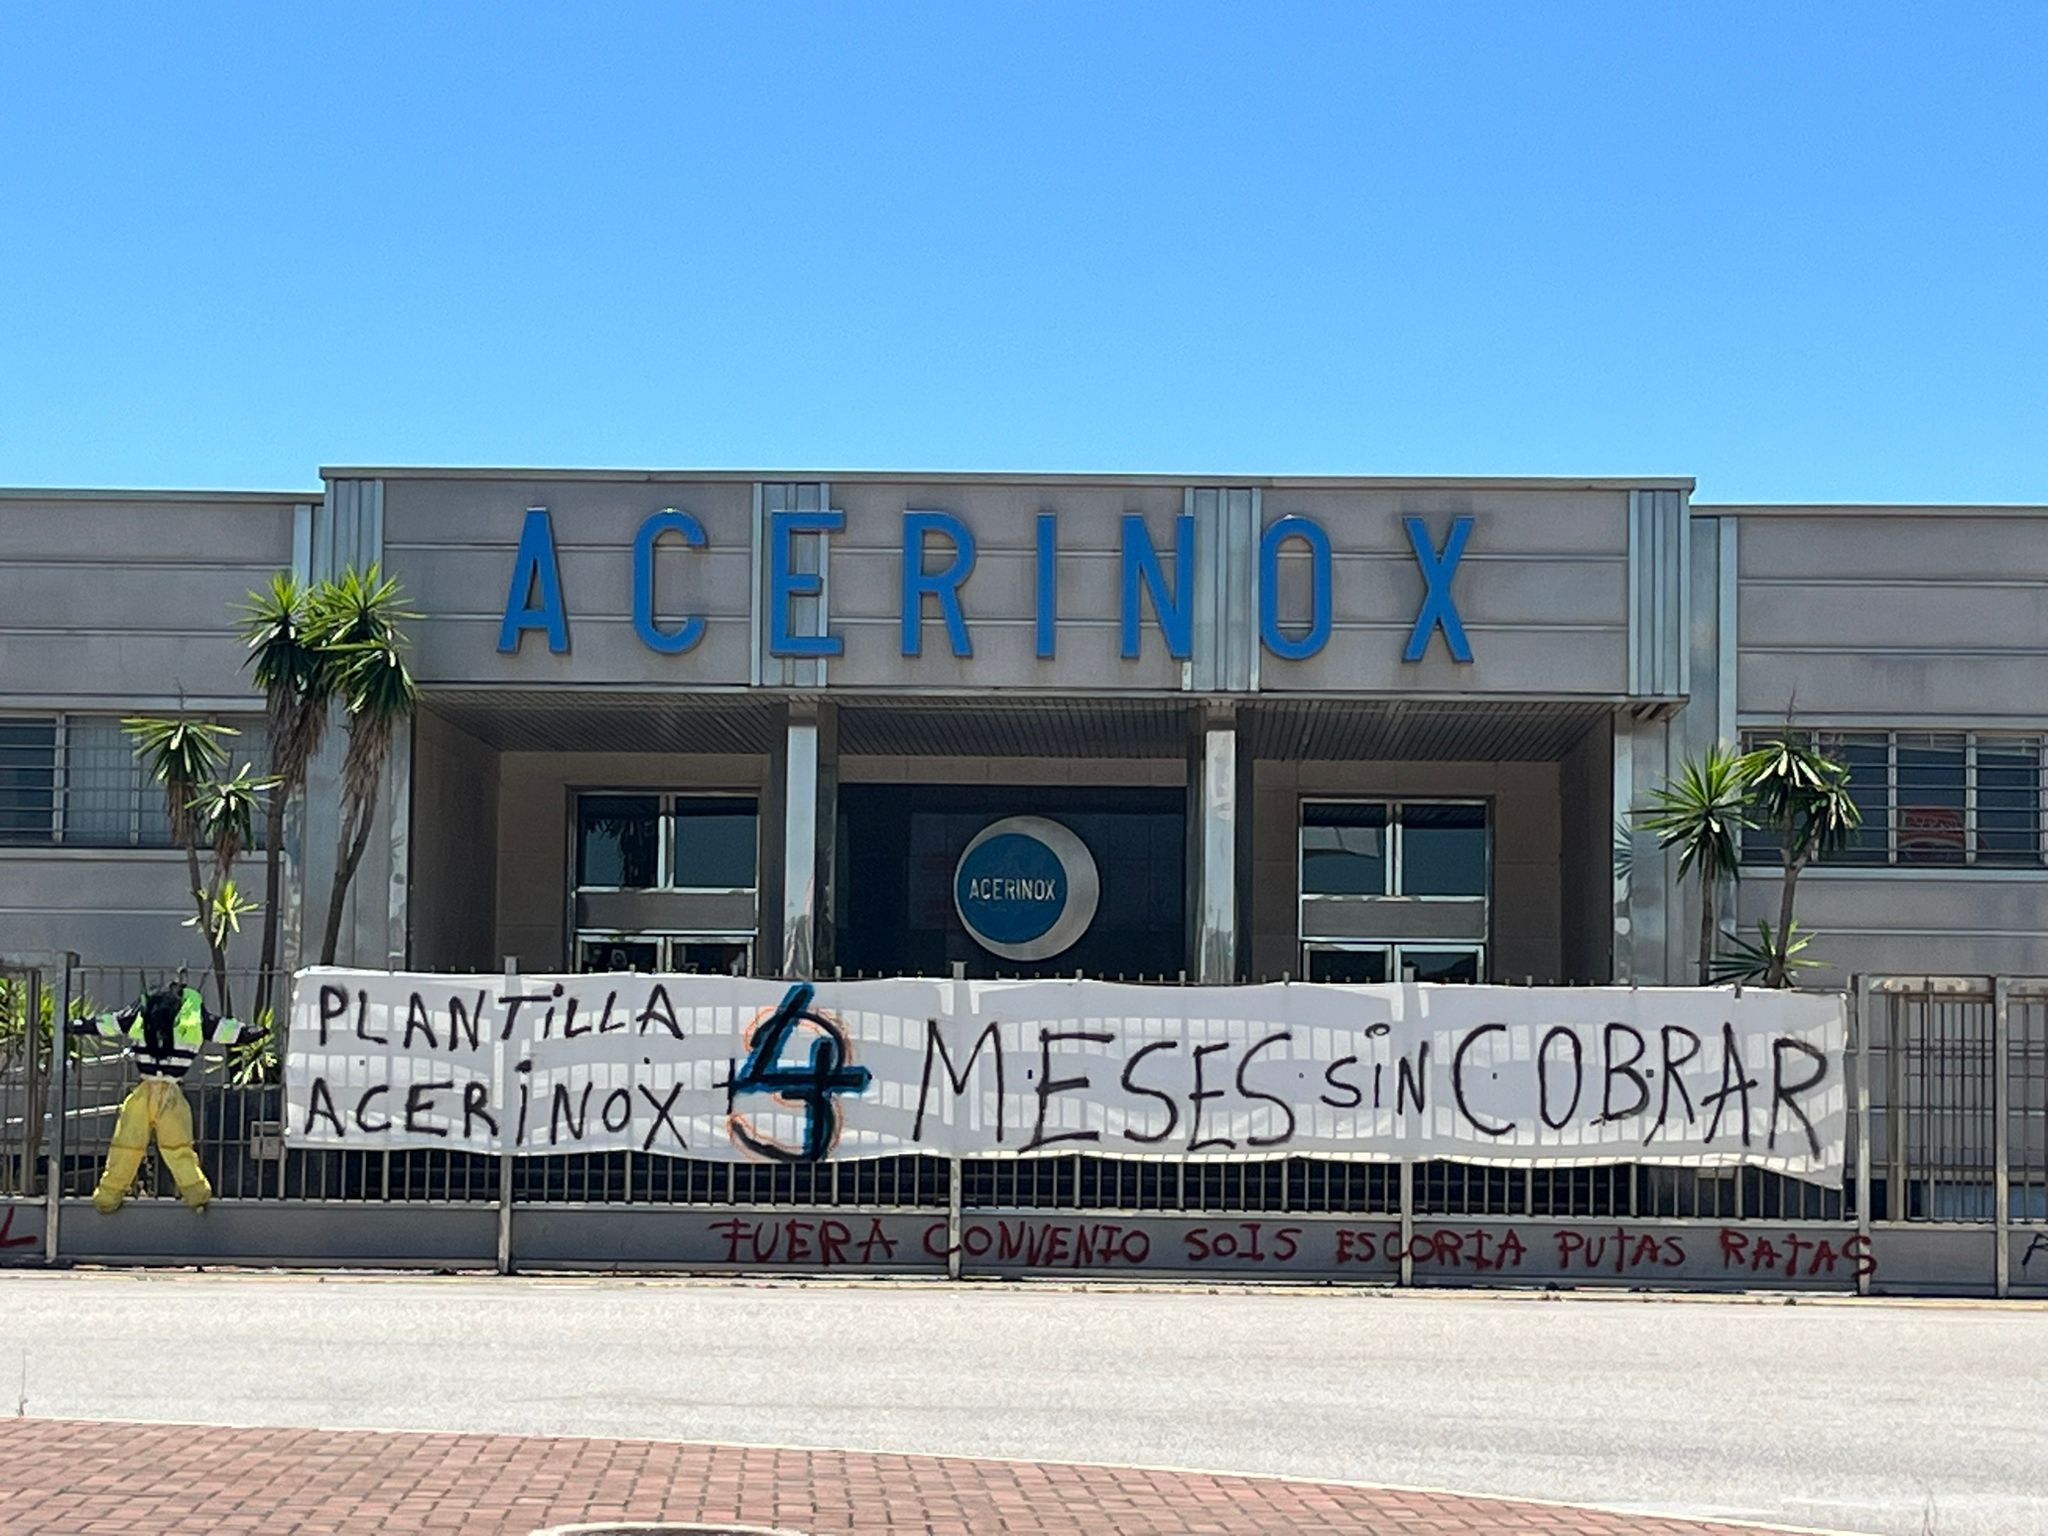 Puerta de Acerinox, con la pancarta que señala los cuatro meses sin cobrar de la plantilla. Foto: F.M.